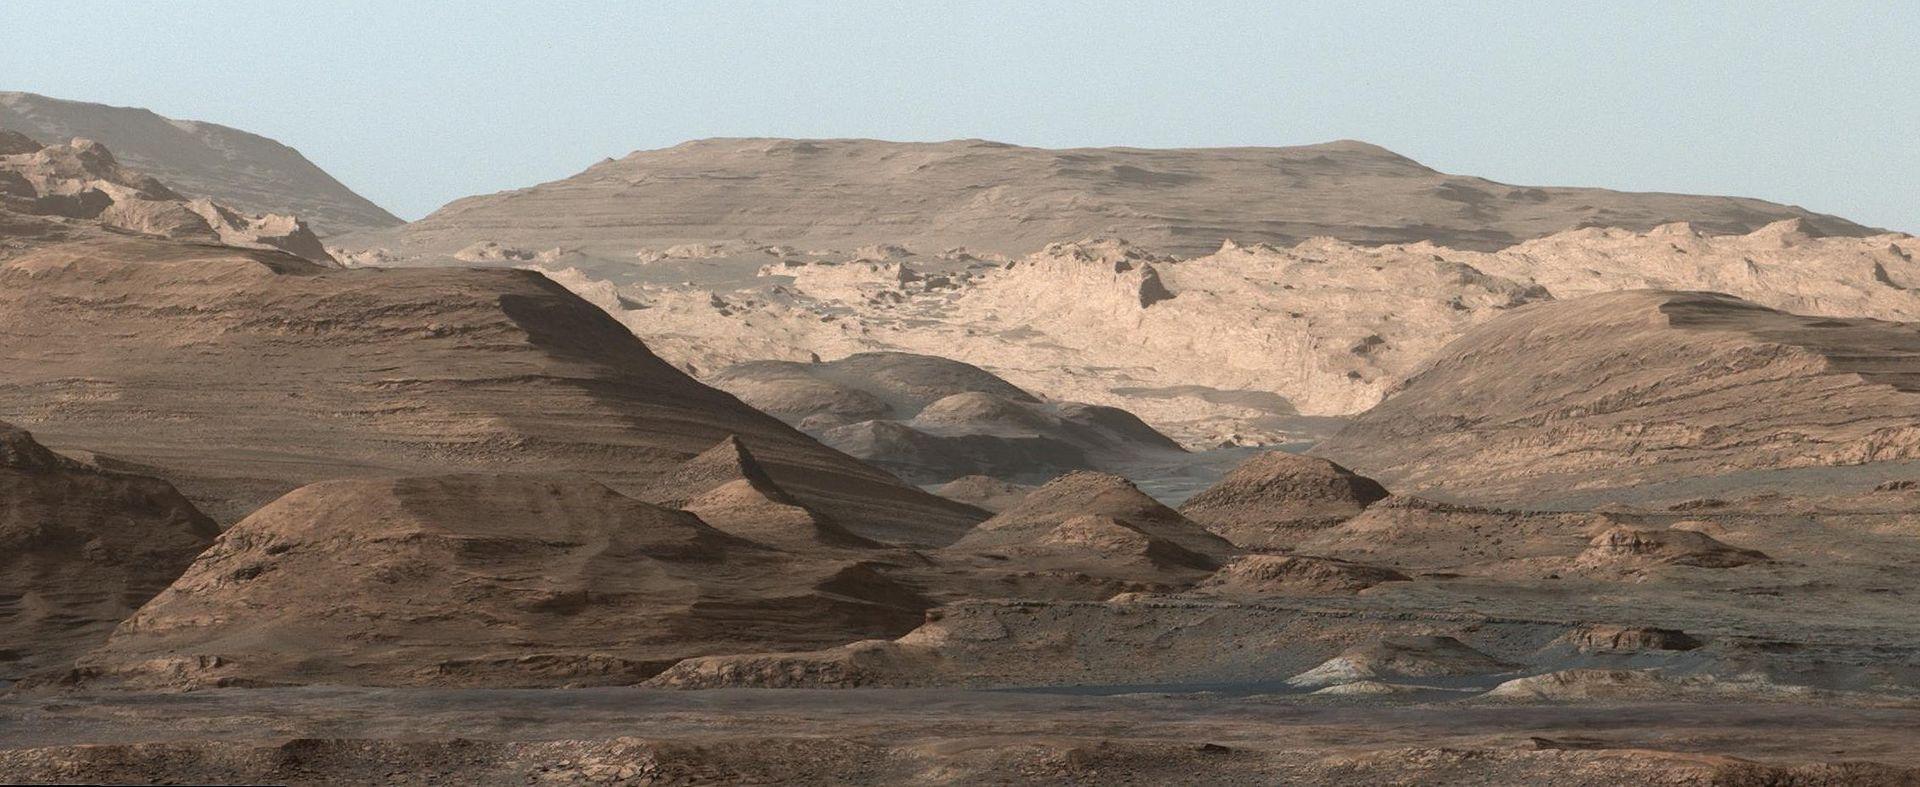 Dette bildet av Mount Sharp på Mars tok Curiosity-roveren i september. Foto: NASA